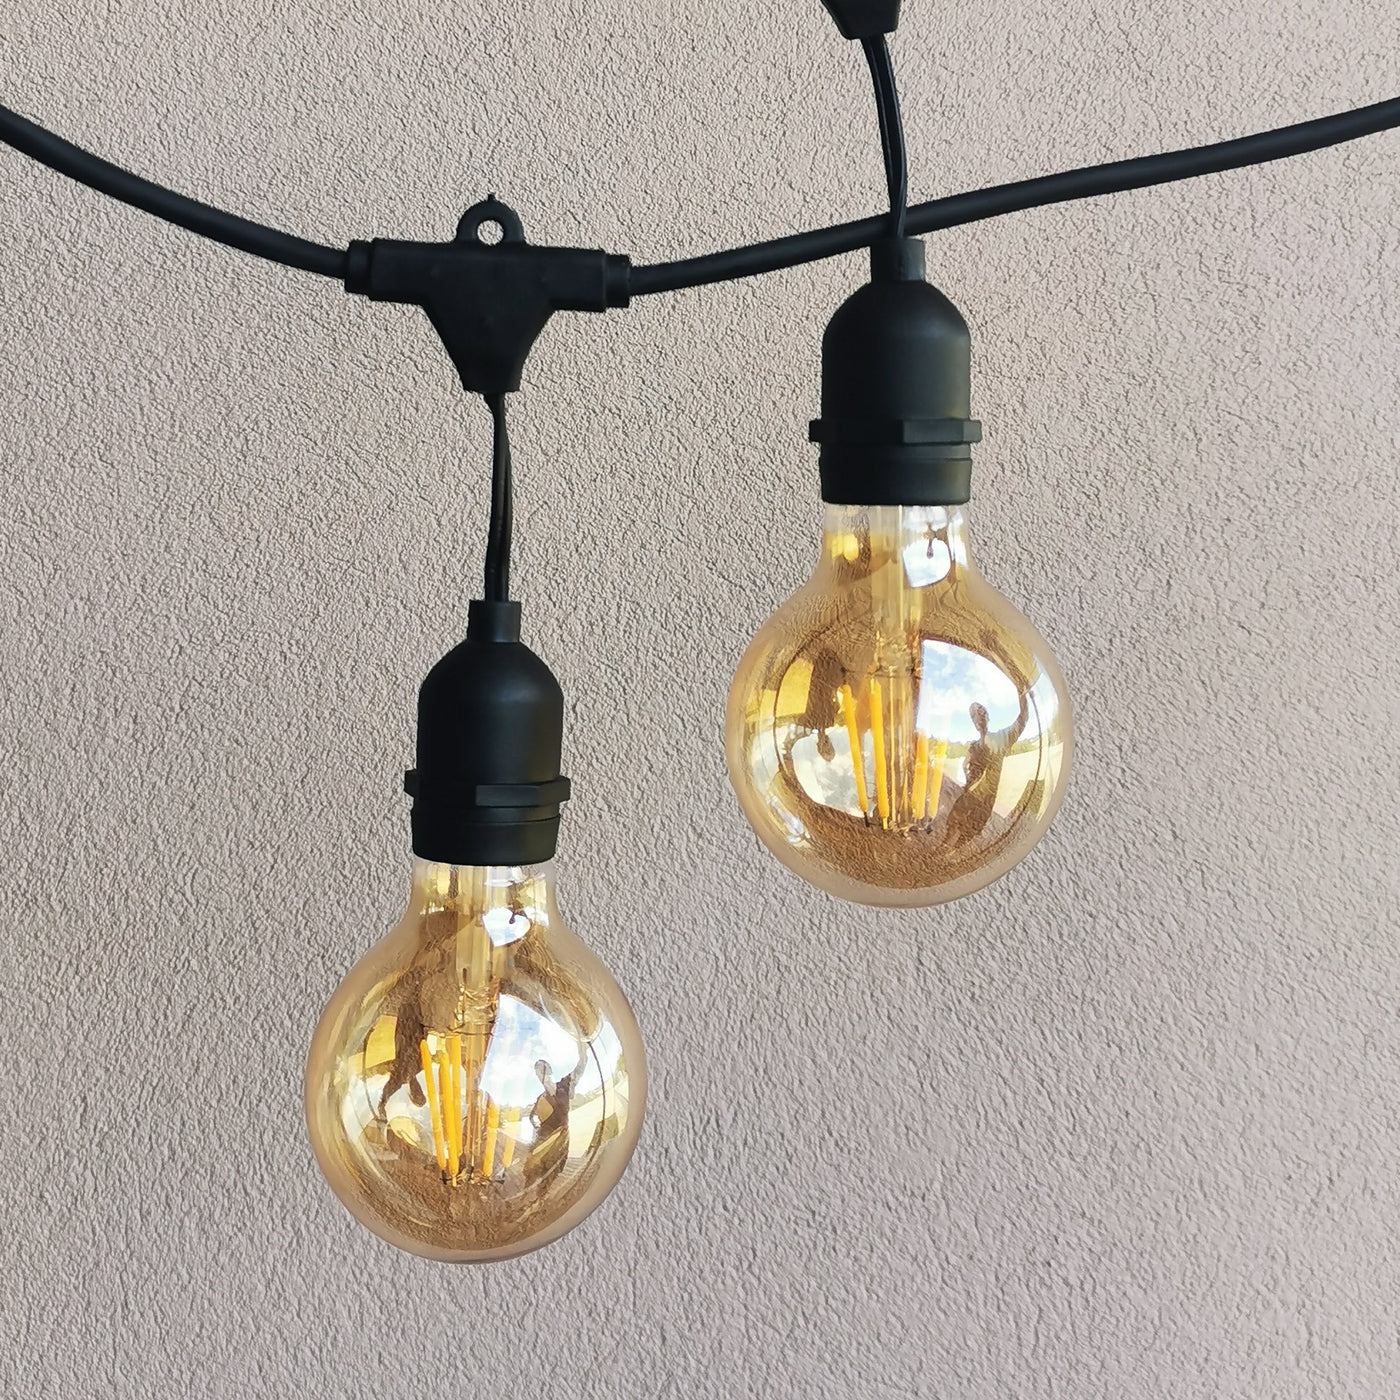 Drop Hang | 10m 10 Bulbs | G80 5w Amber Glass | Dimmable Festoon Lights